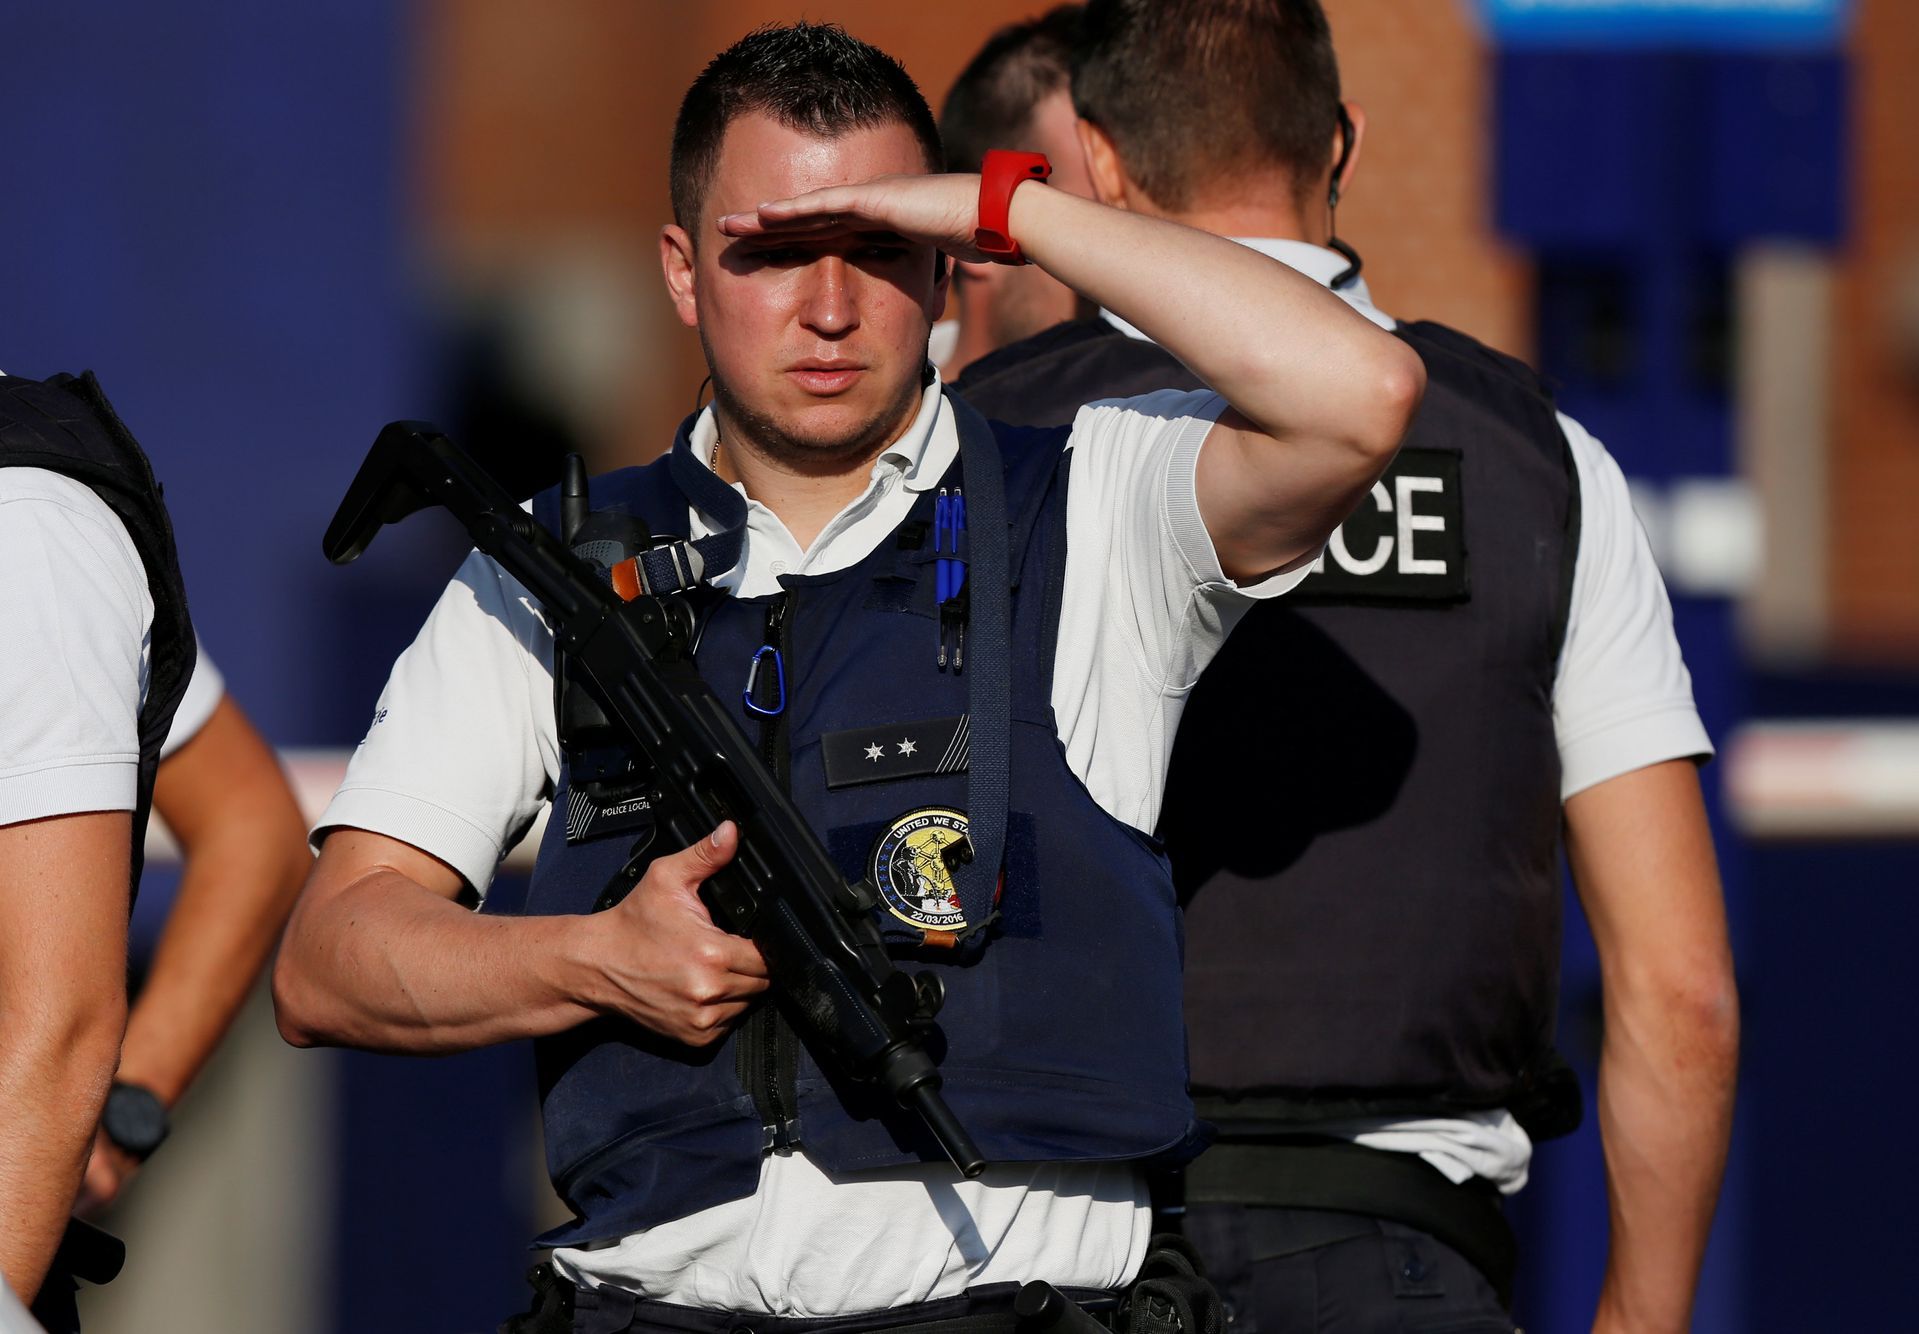 Belgie snížila stupeň ohrožení terorismem na druhý. V ulicích zůstane "přiměřené množství" policistů